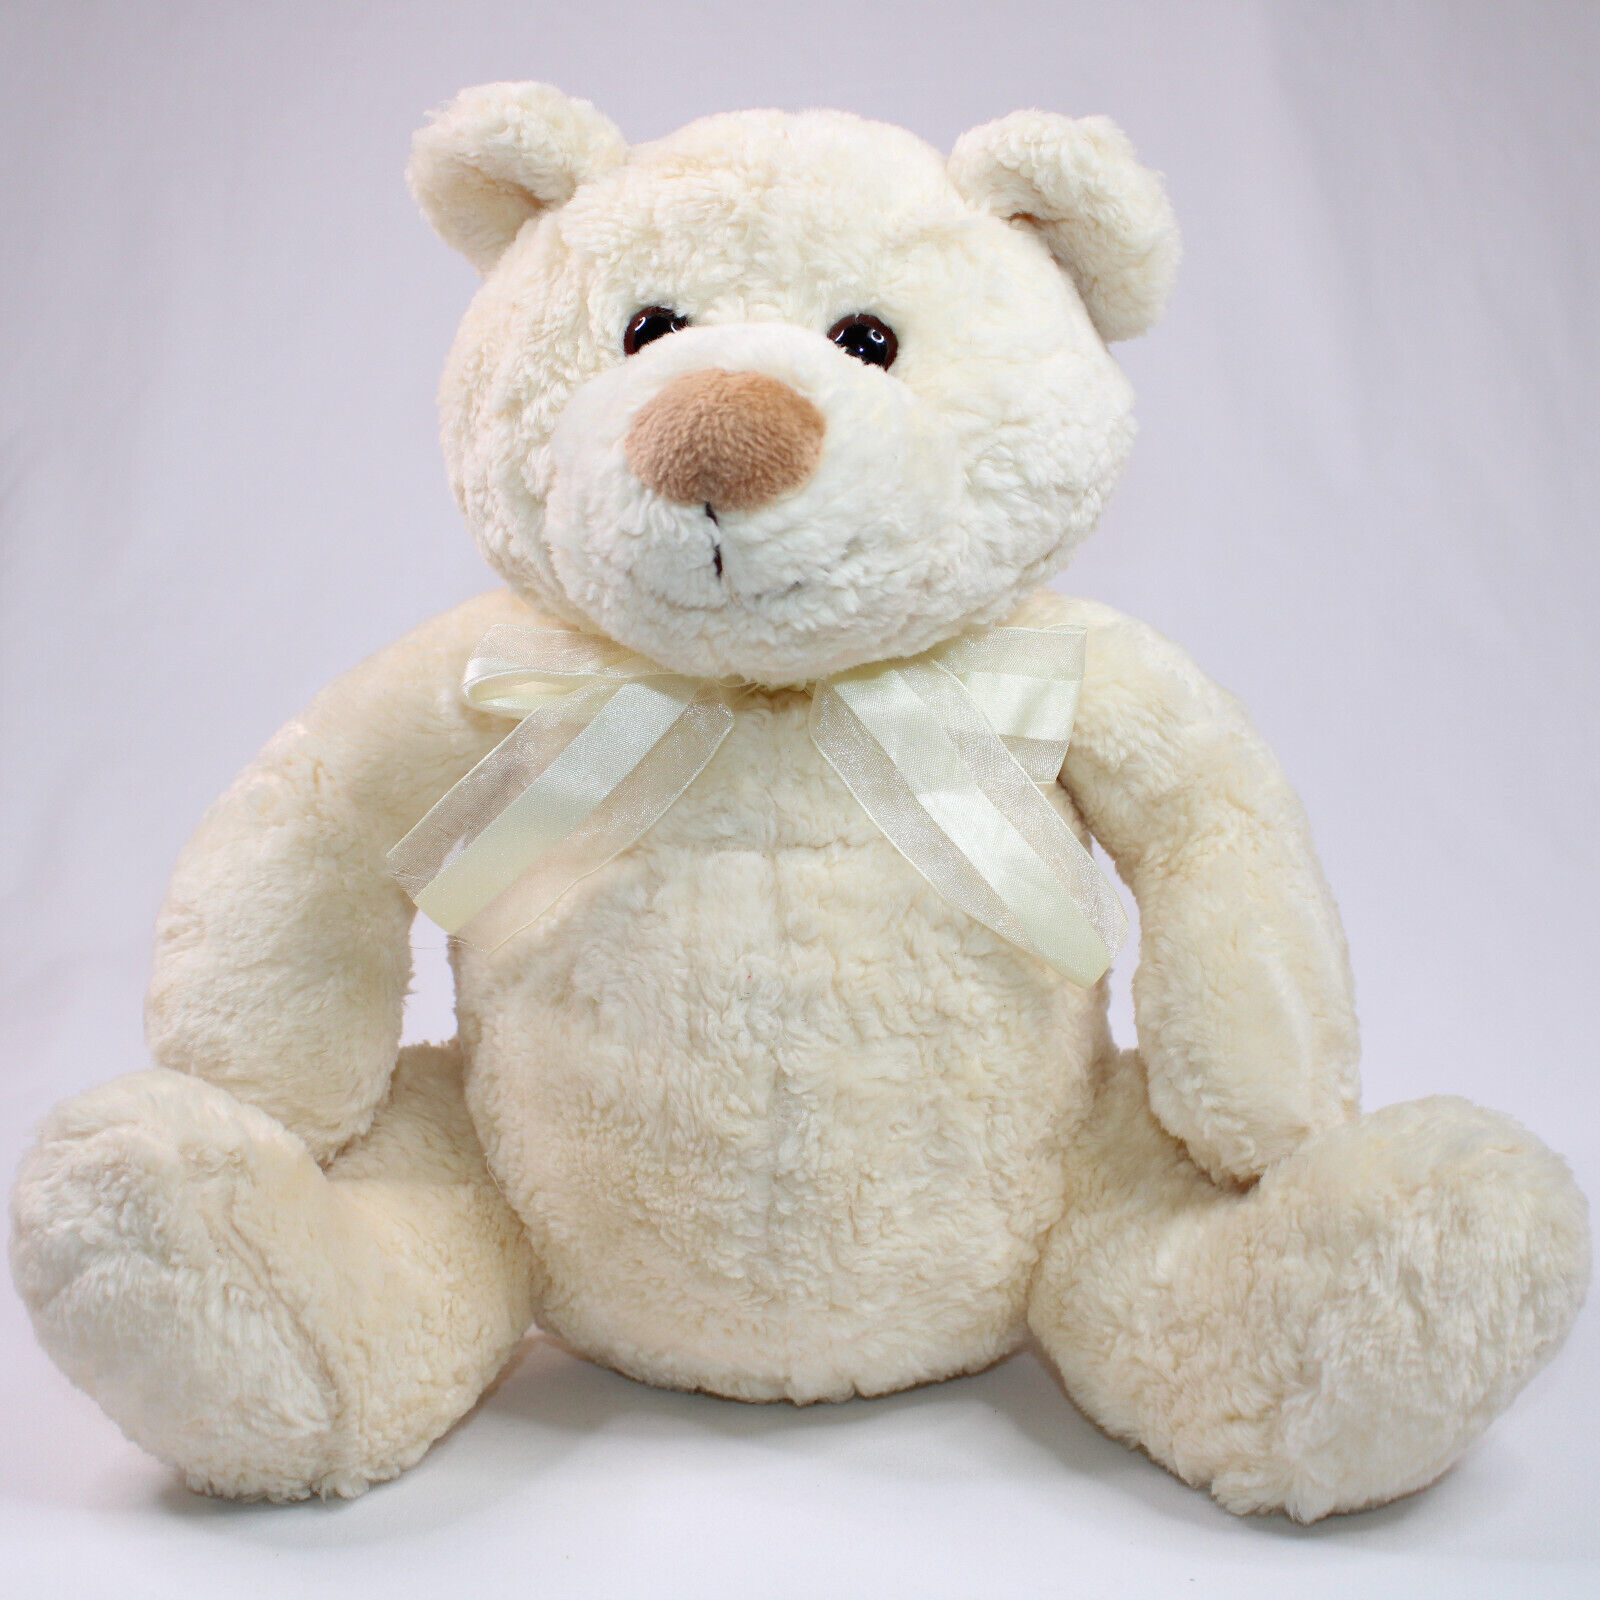 Gund Cream 11" Curly Teddy Bear Plush Stuffed Toy Teddy Bear Animal With Bow - $10.70